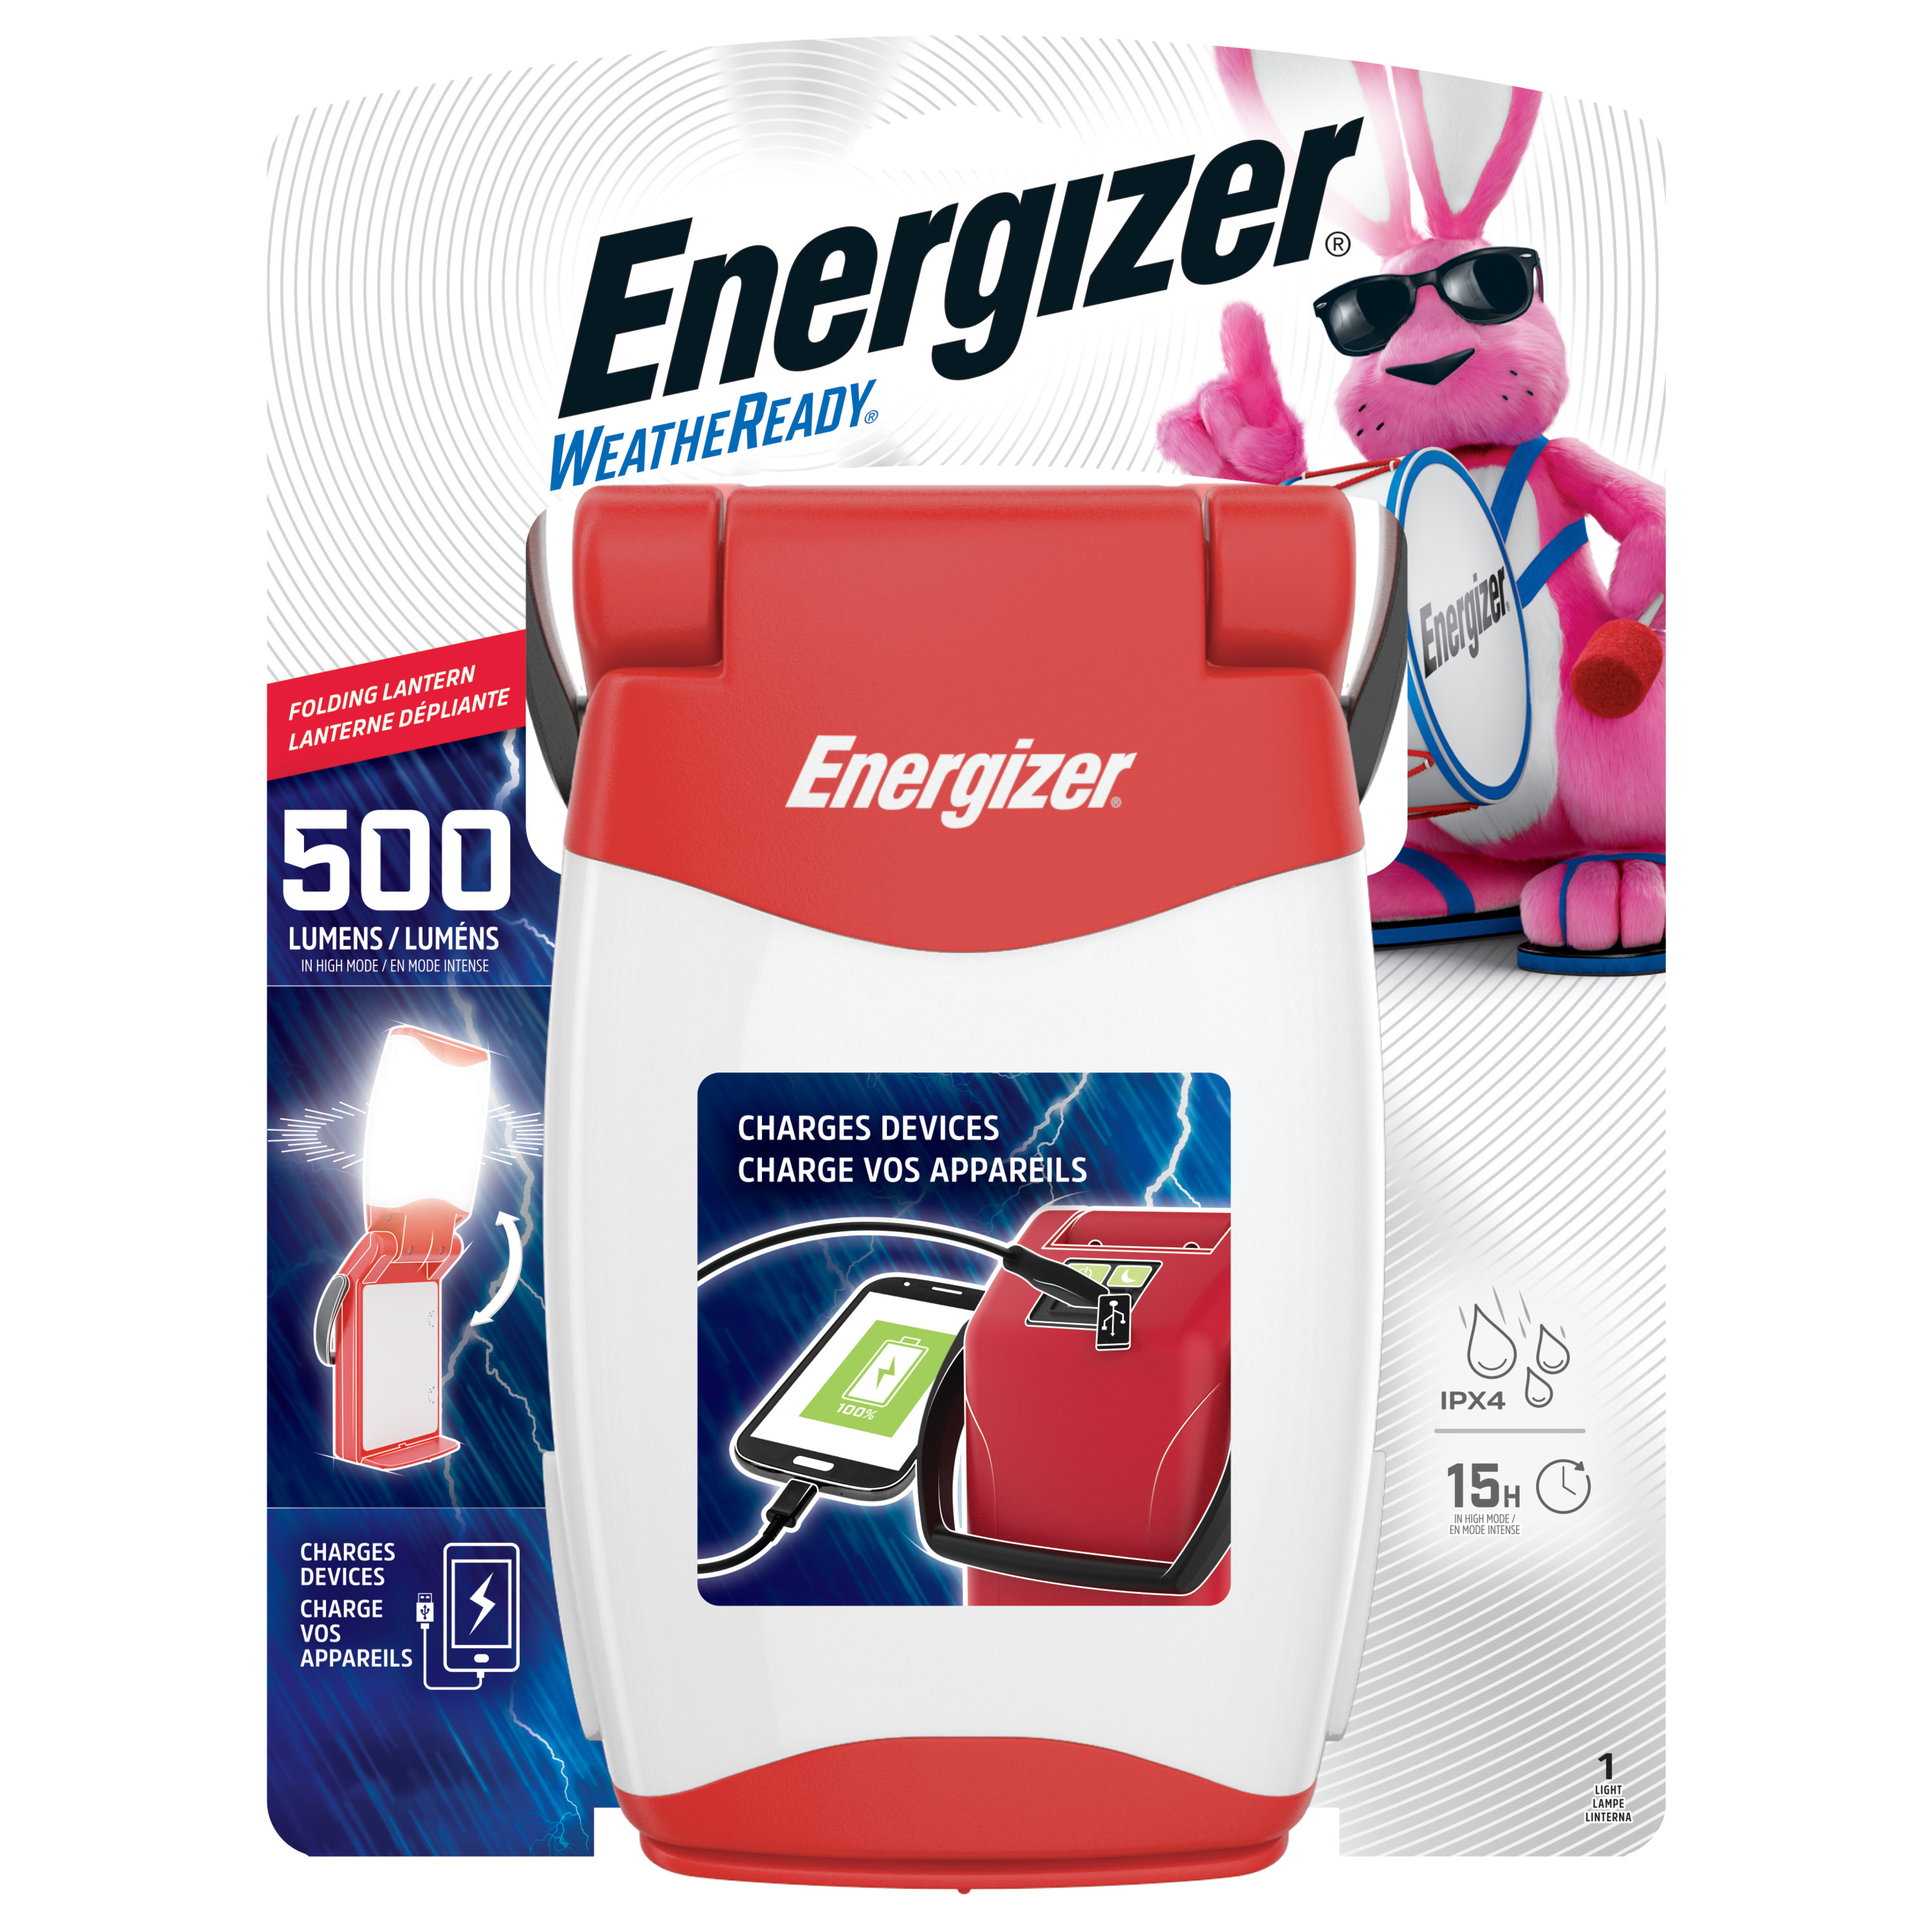 Energizer Emergency Folding LED Lantern, Red, 500 Lumens, IPX4 Water Resistant, Portable LED Light, Durable Emergency Lantern - image 1 of 11